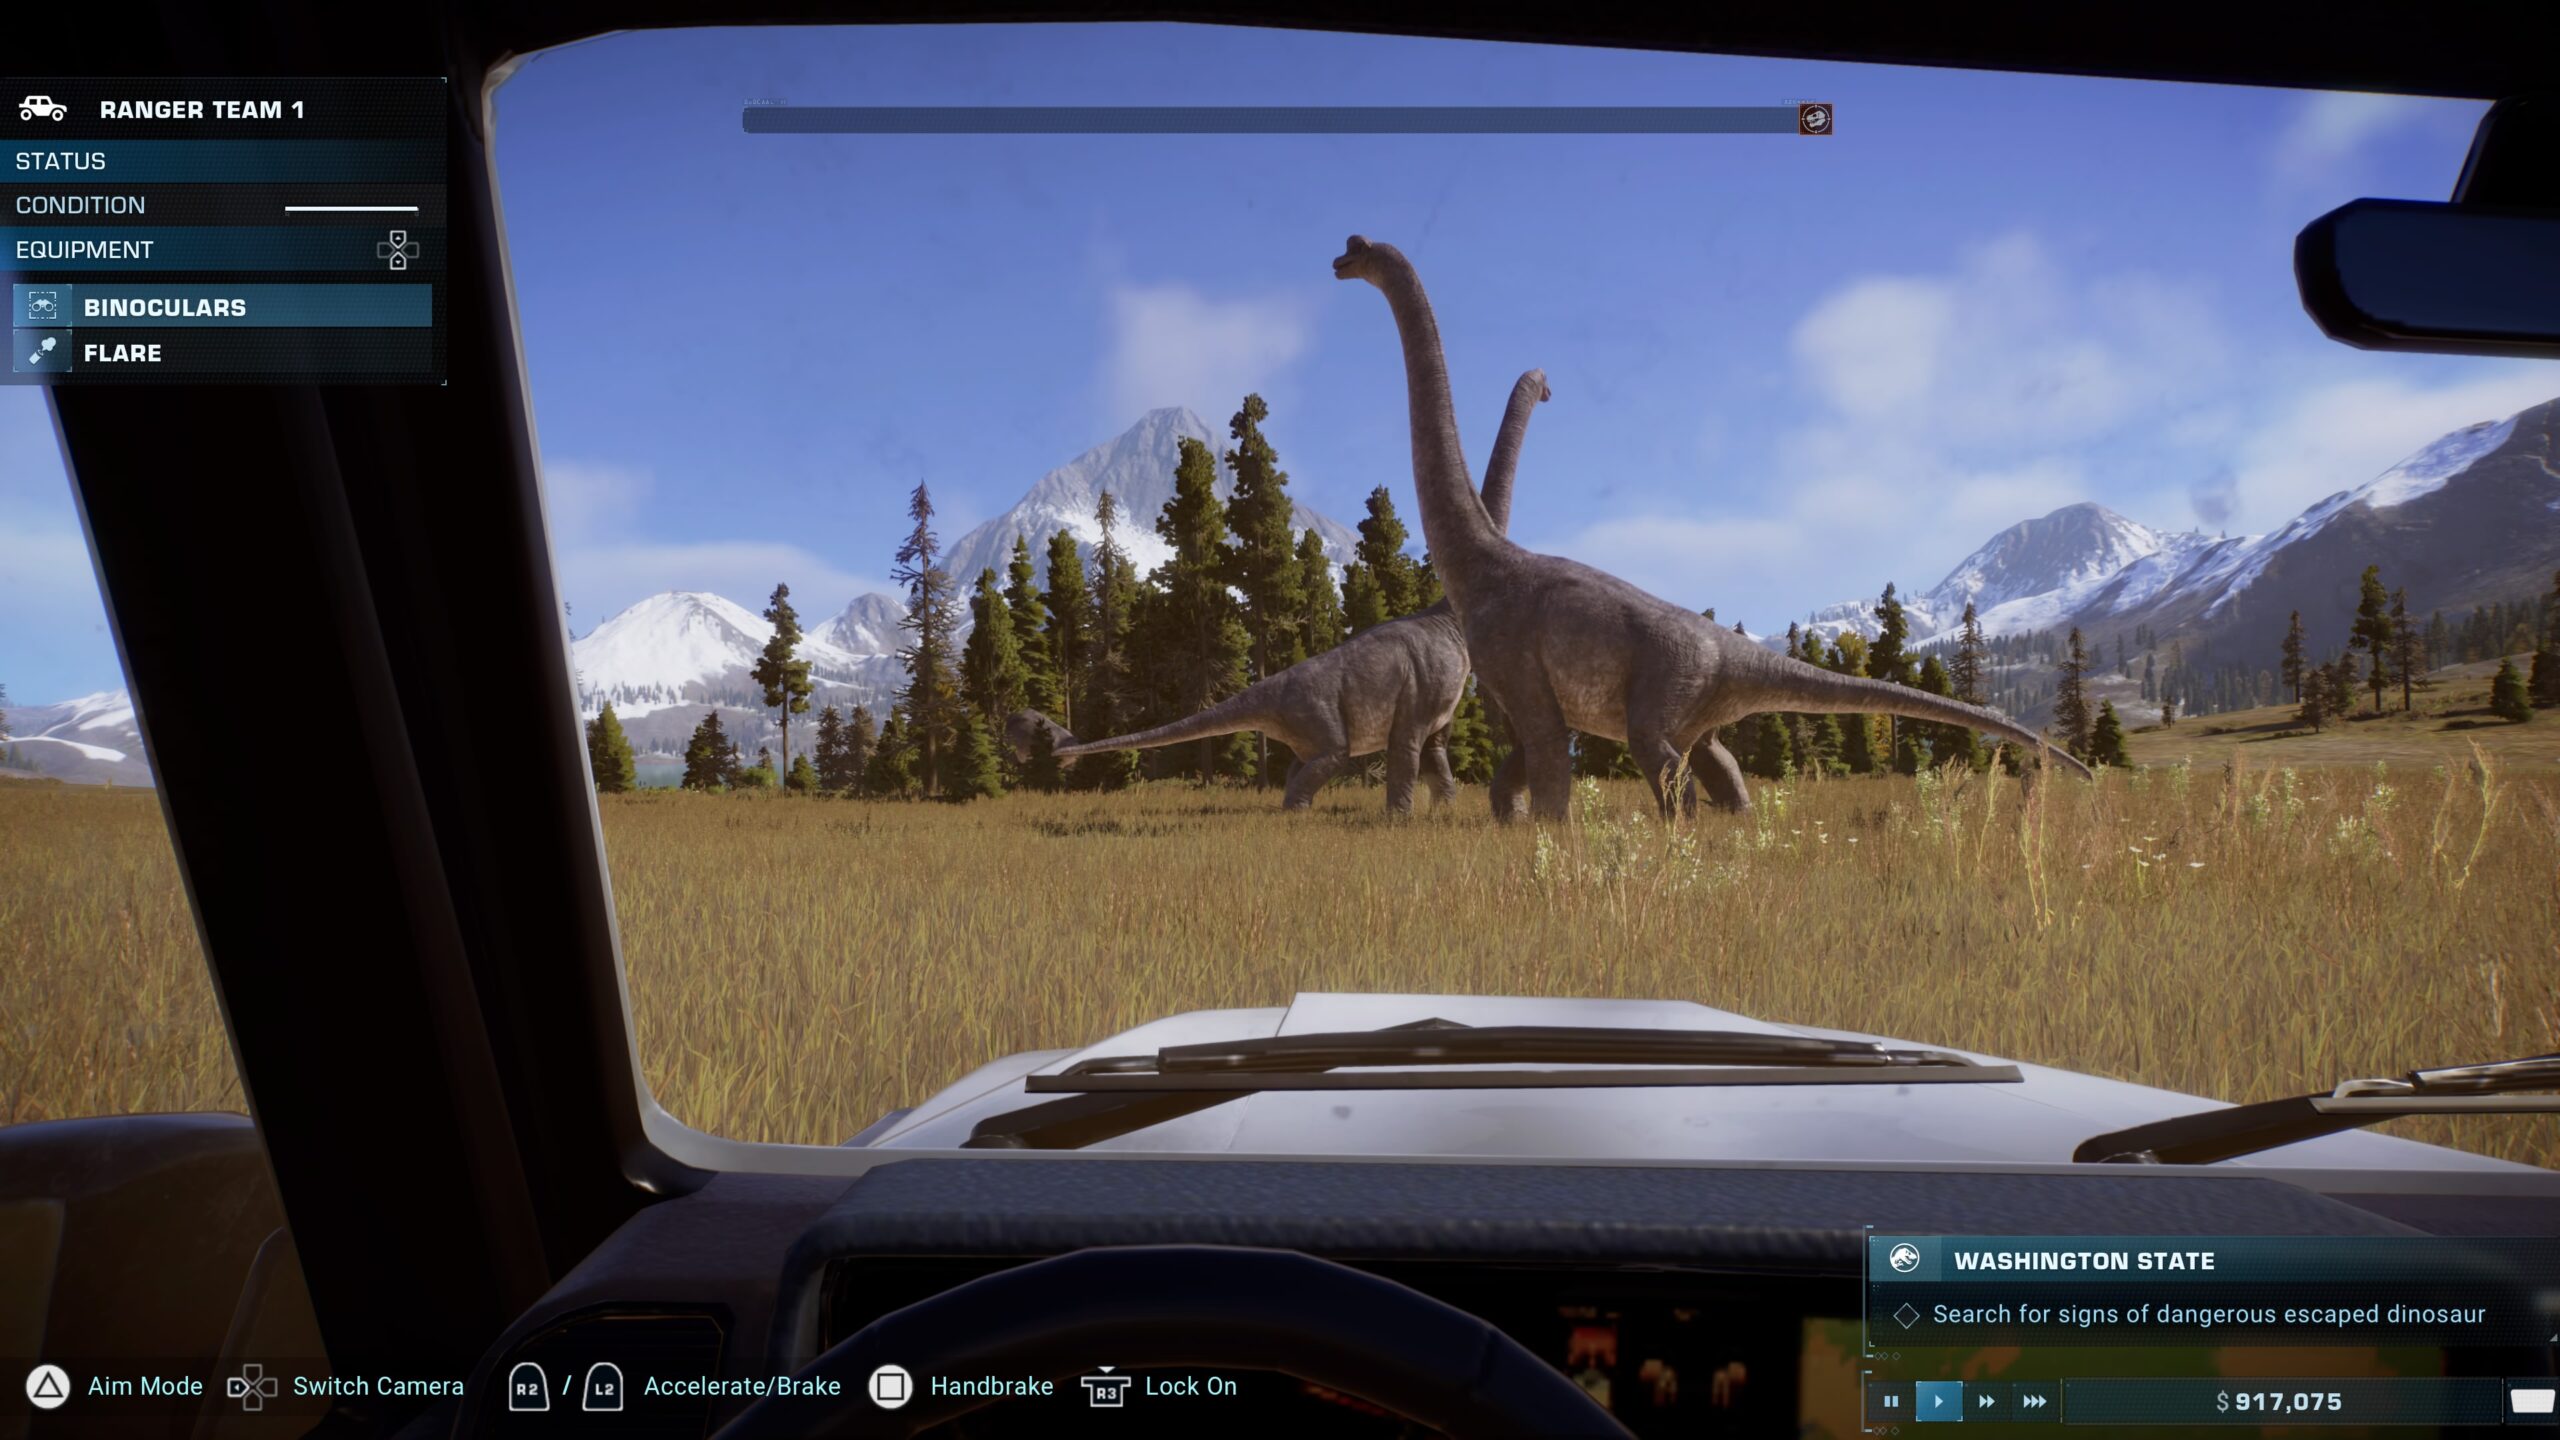 Jurassic World Evolution 2: TODOS los dinosaurios y cómo desbloquearlos